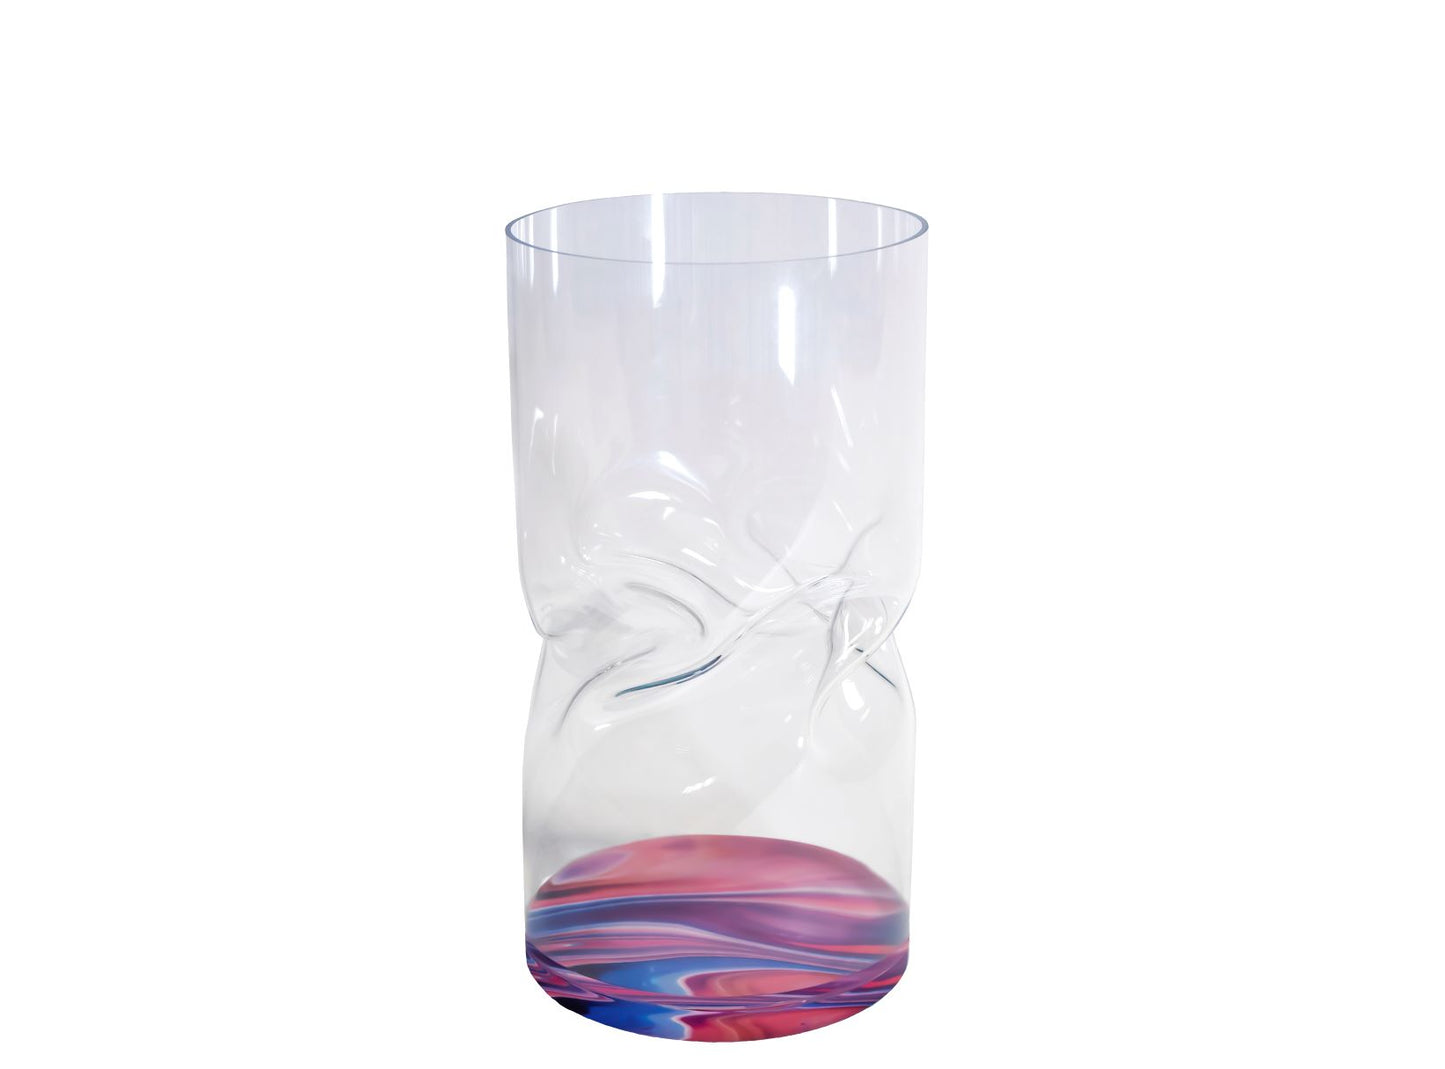 Vaso grande in cristallo acrilico trasparente con il fondo decorato con grafiche astratte multicolore rosa. Dimensioni: diametro cm 20 x 40 h. In negozio e online su tuttochic.it